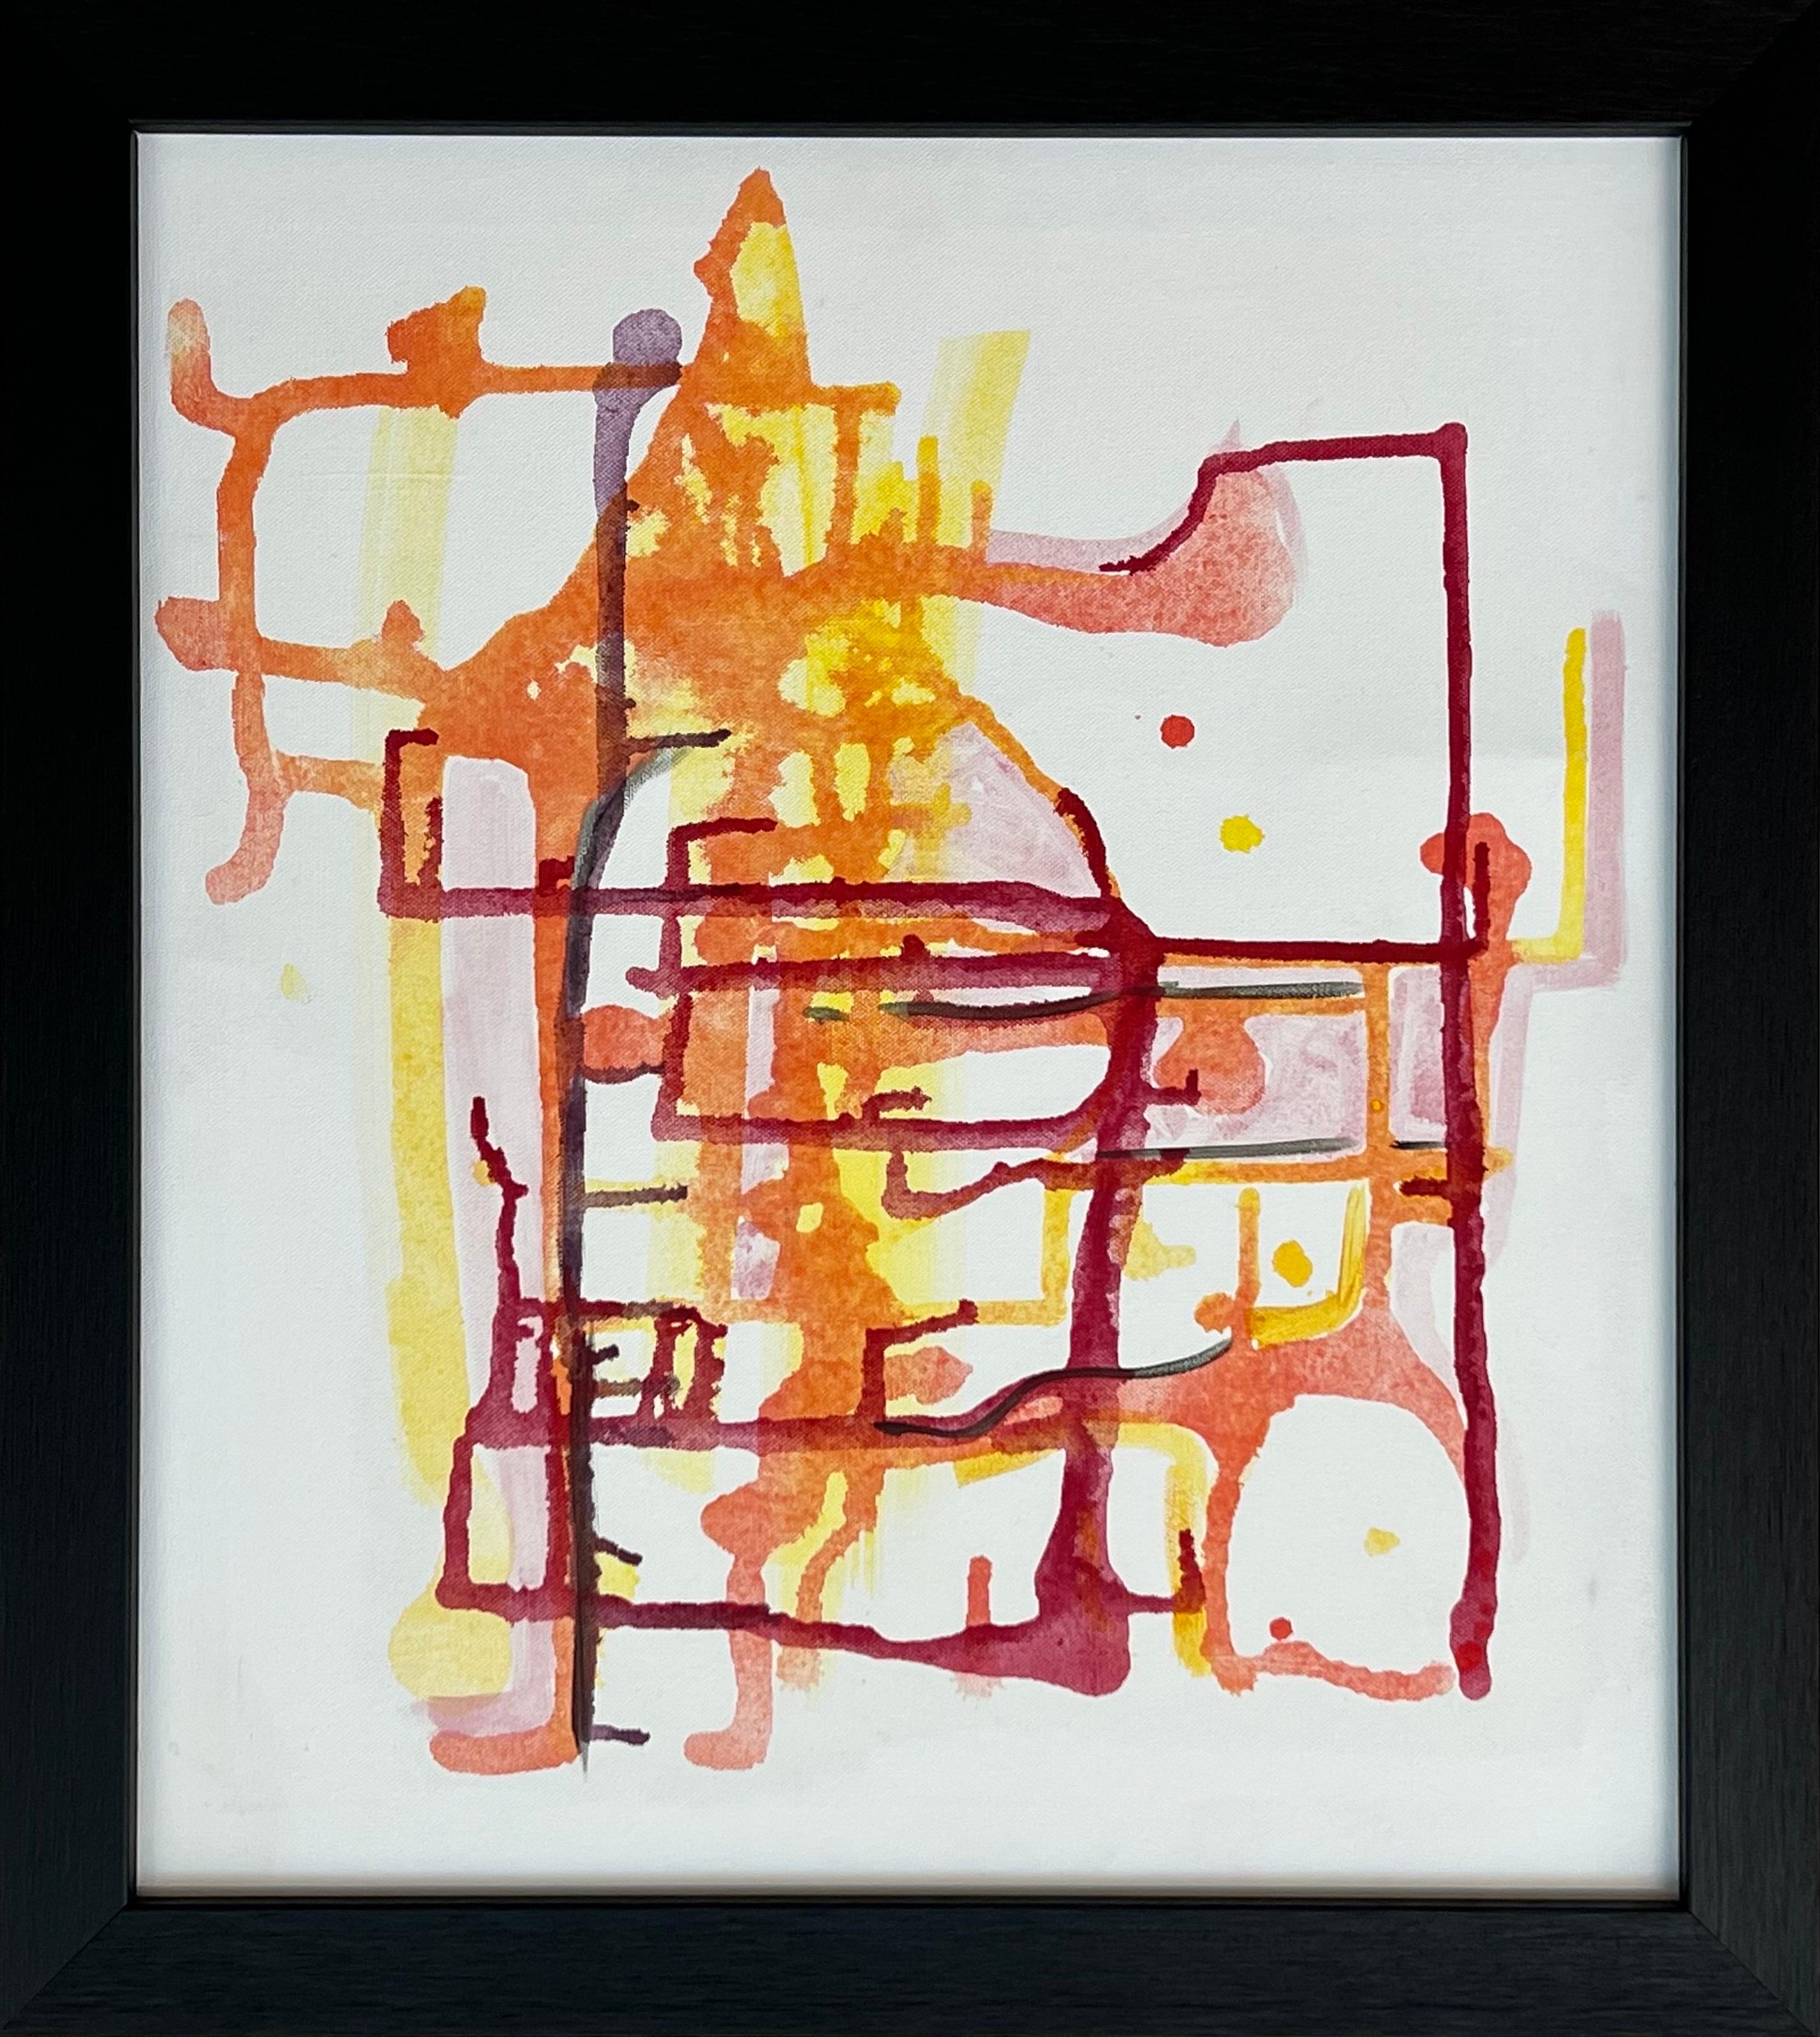 Peinture abstraite ancienne rouge, jaune et orange sur fond blanc d'un artiste britannique - Expressionnisme abstrait Painting par Angela Wakefield